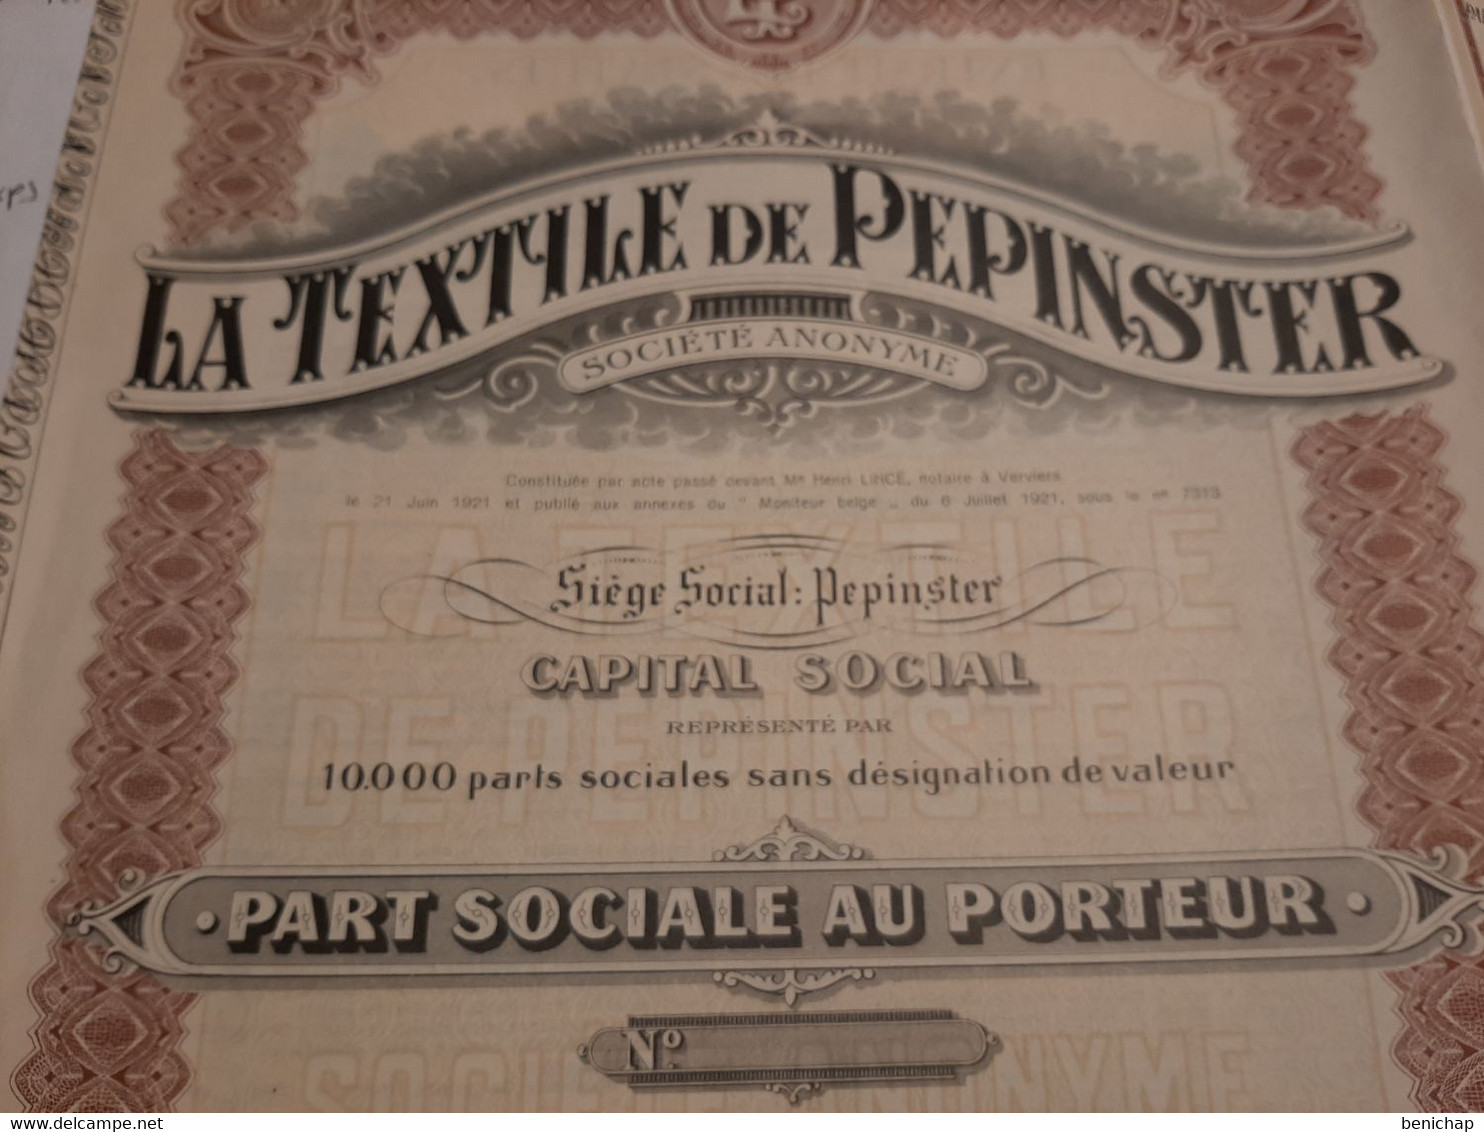 La Textile De Pepinster S.A. - Part Sociale Au Porteur - Pepinster 6 Juillet 1921. - Textile